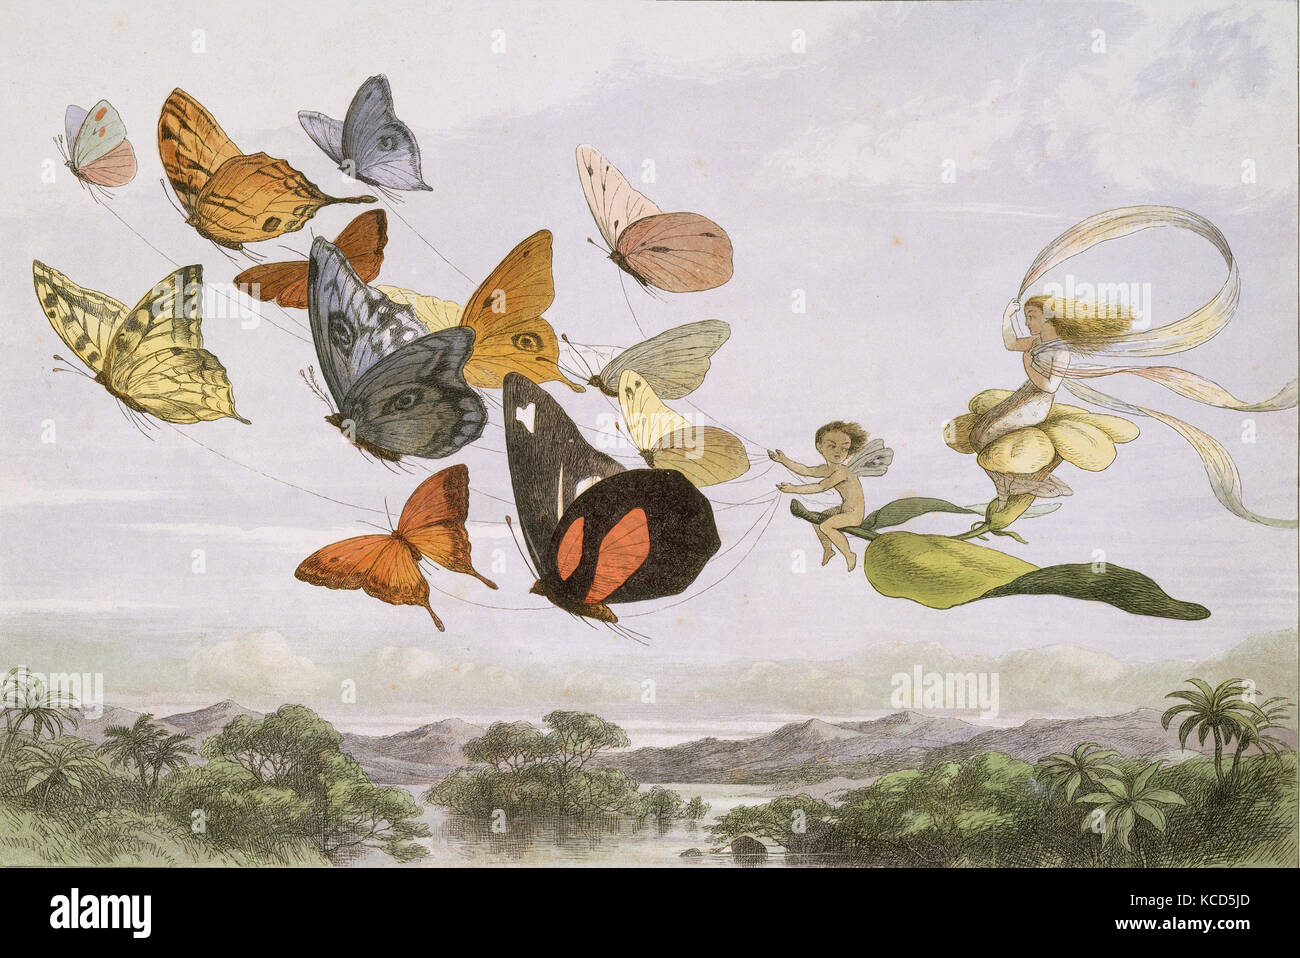 Der Fairy Queen nimmt eine luftige Fahrt im Licht der Beförderung eine zwölf-in-Hand, gezeichnet von Reinrassigen Schmetterlinge, Richard Doyle Stockfoto